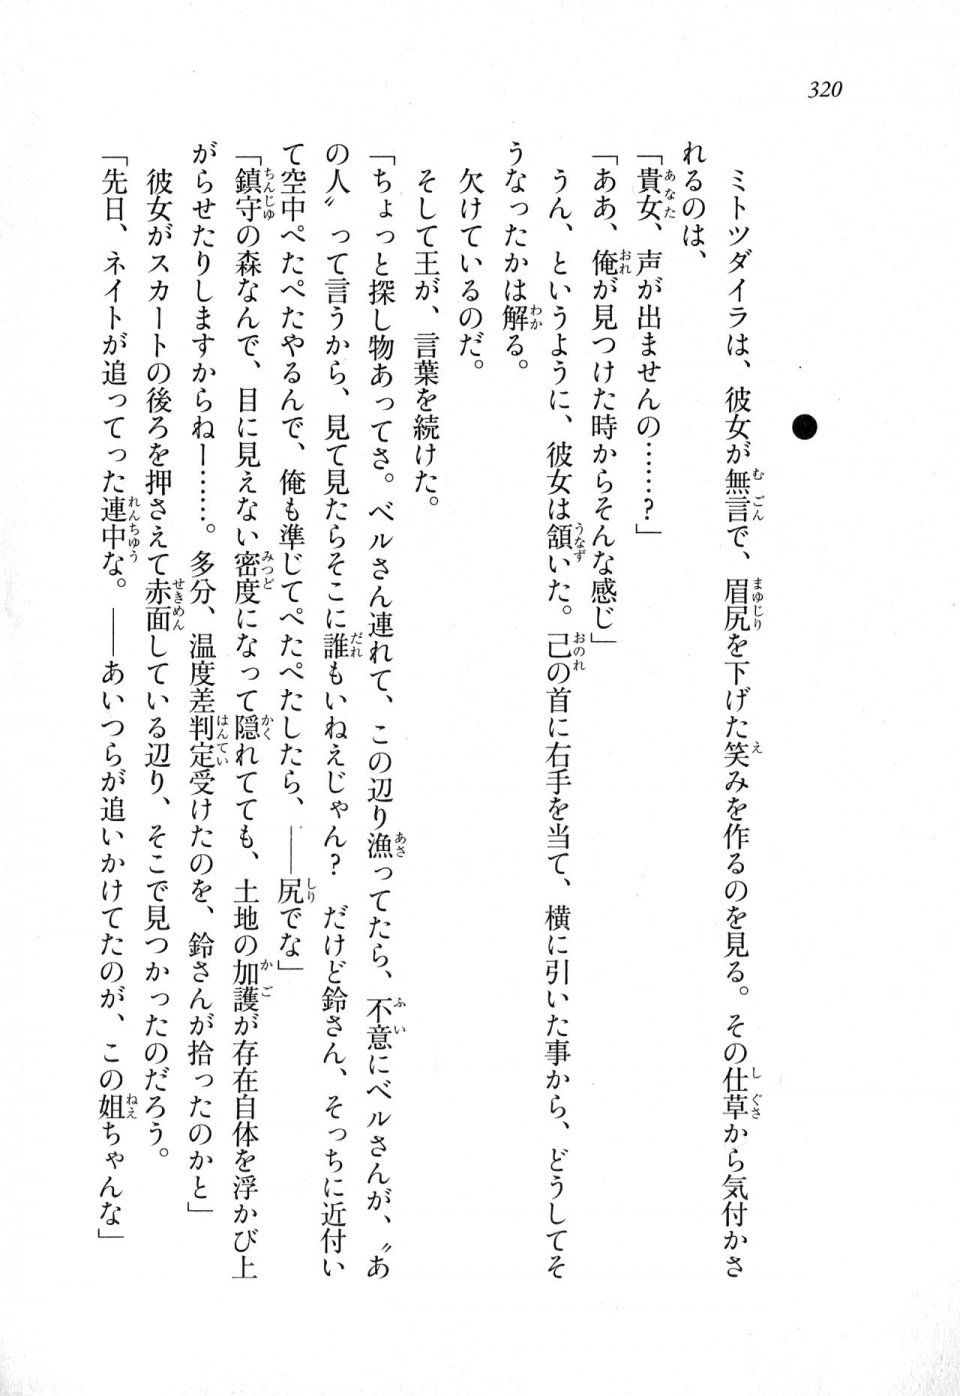 Kyoukai Senjou no Horizon LN Sidestory Vol 1 - Photo #318